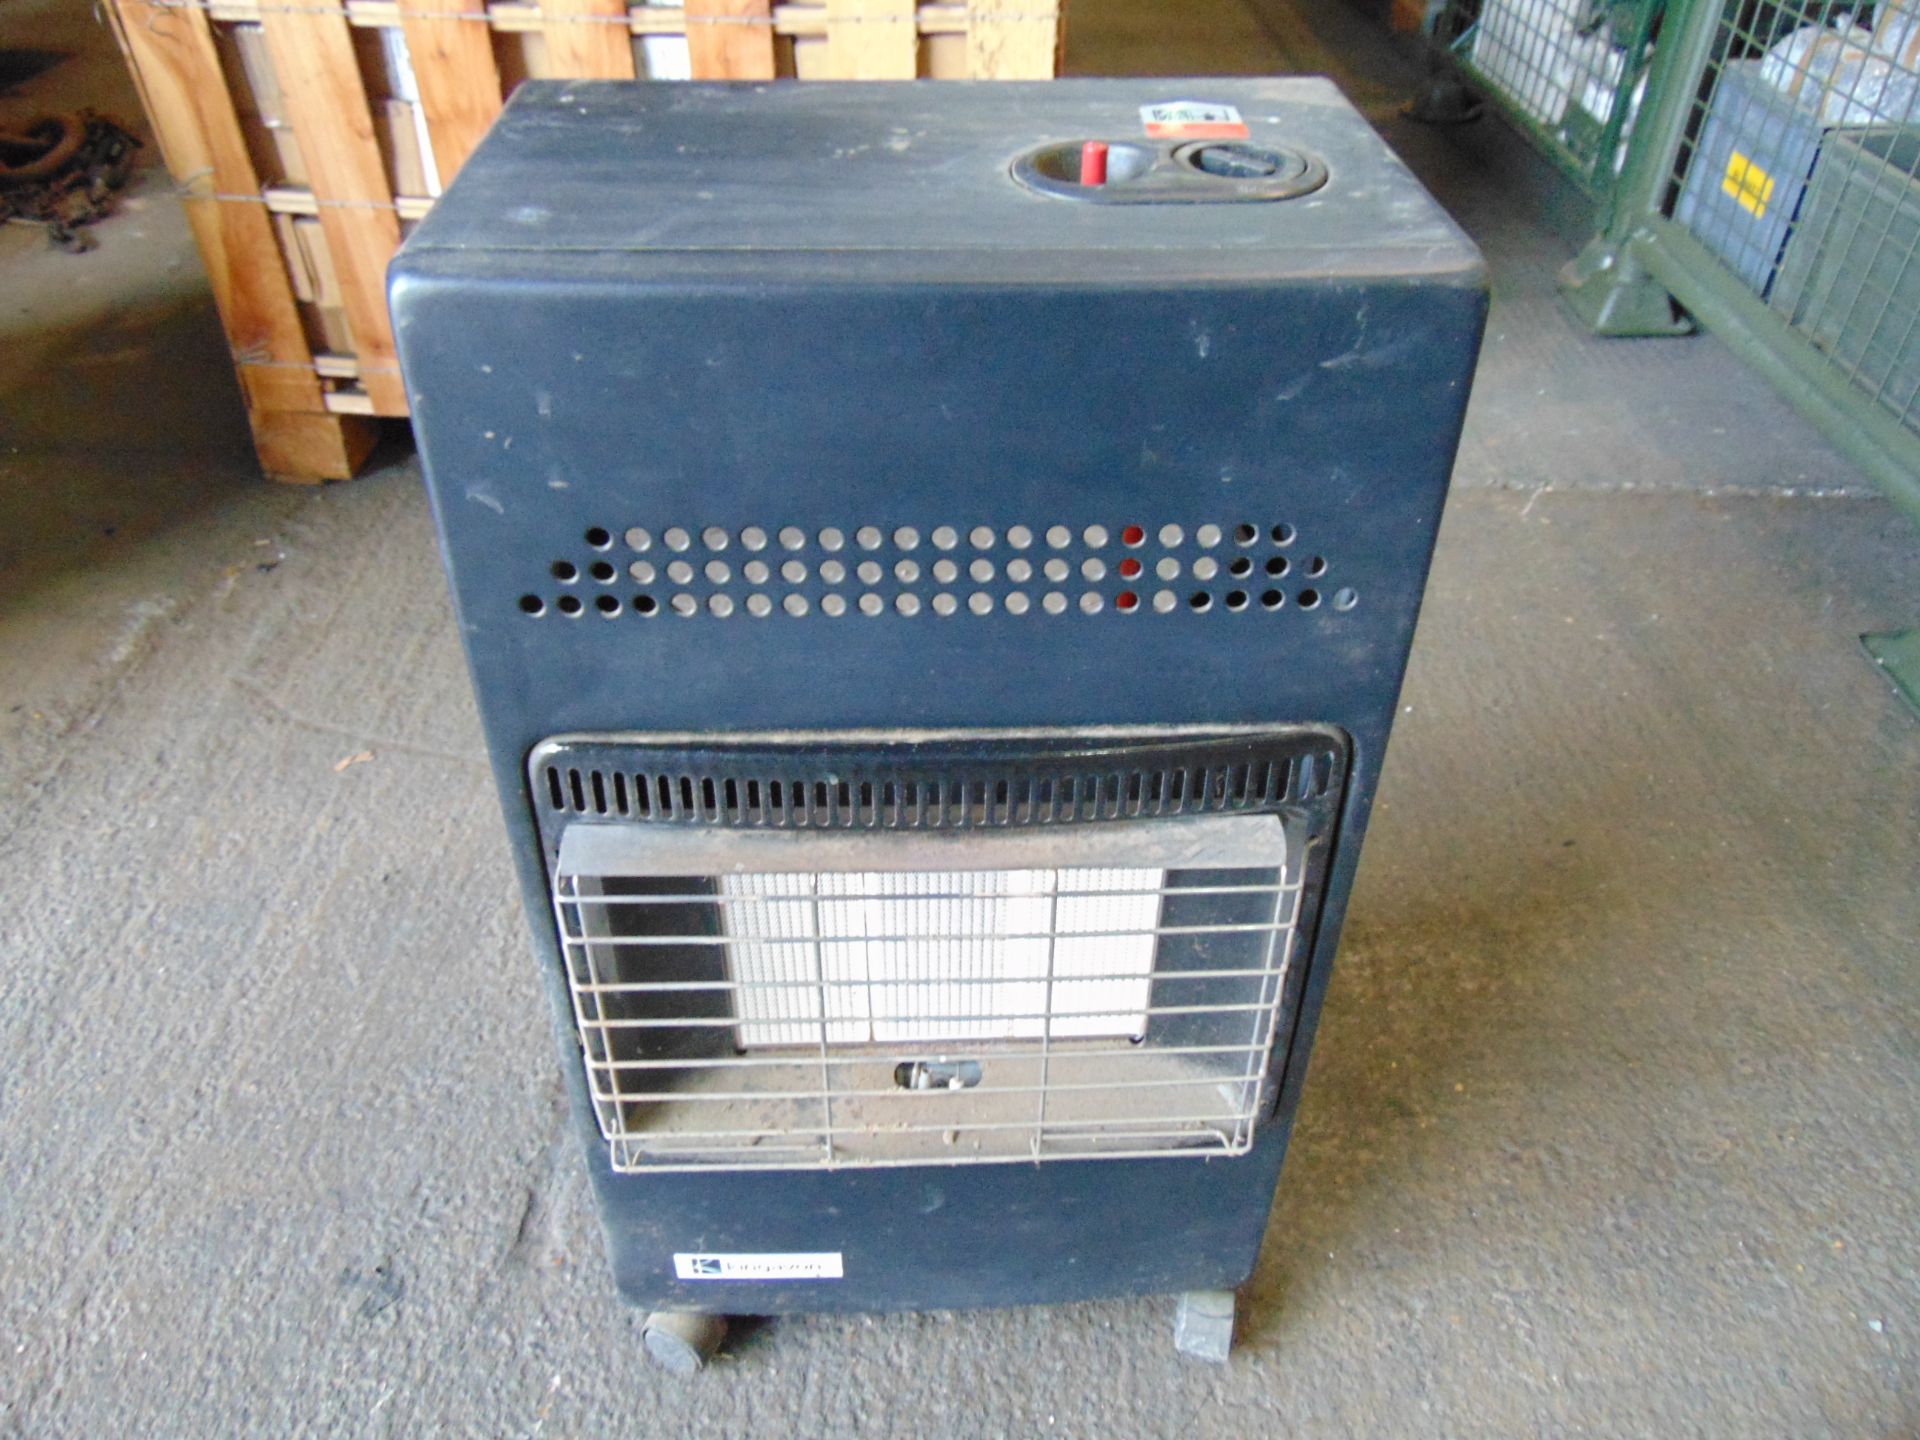 Kingavon PG150 4.2kW Portable Gas Heater